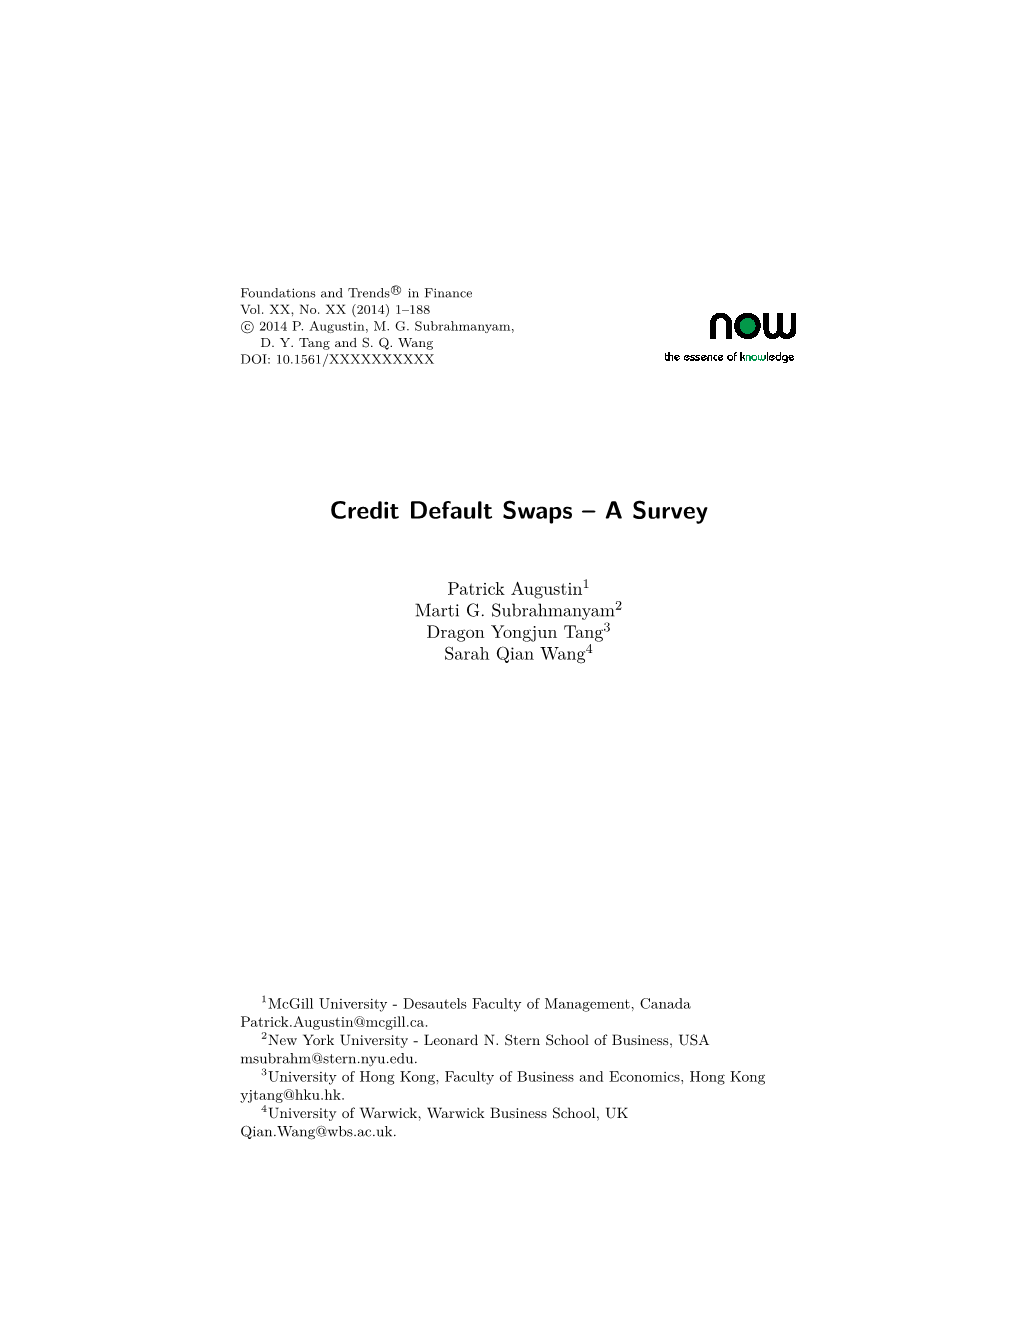 Credit Default Swaps – a Survey